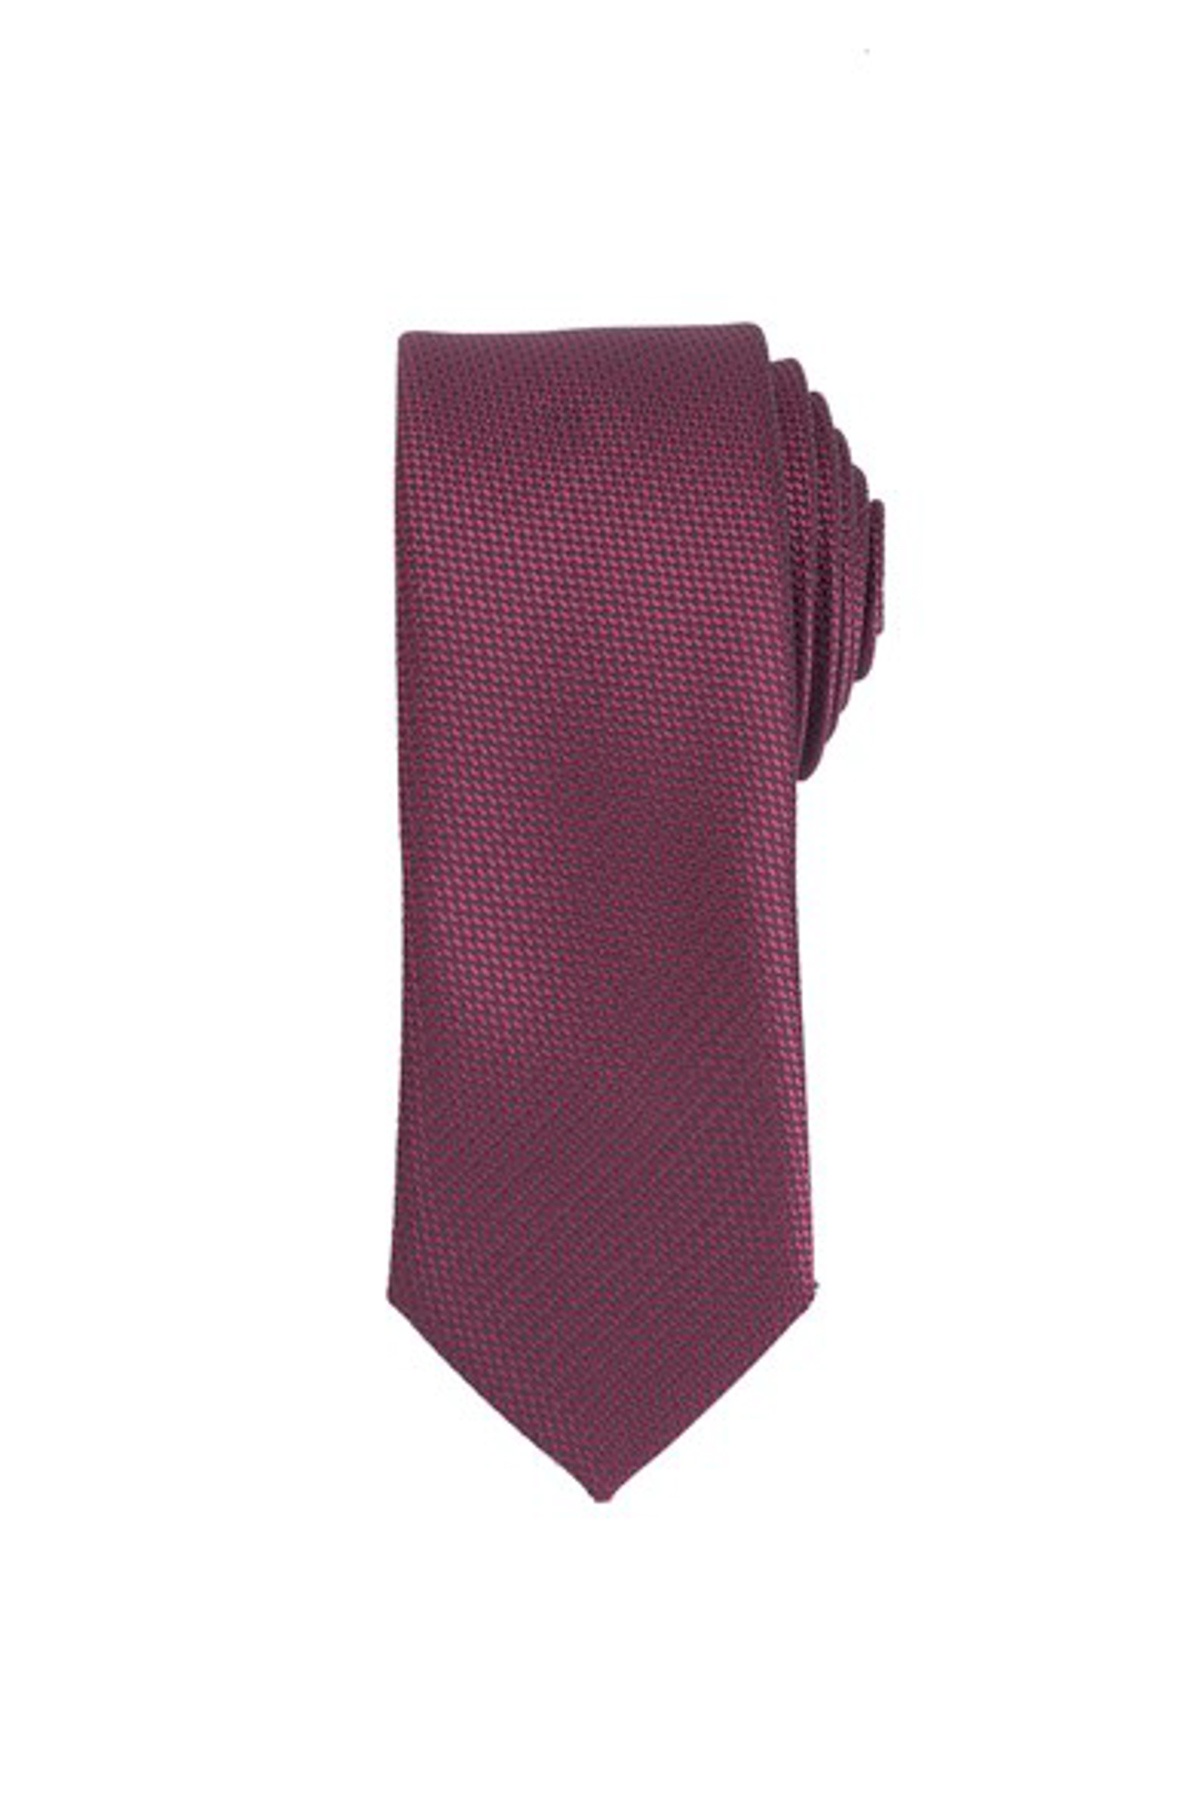 Sötétlila színű vékony nyakkendő